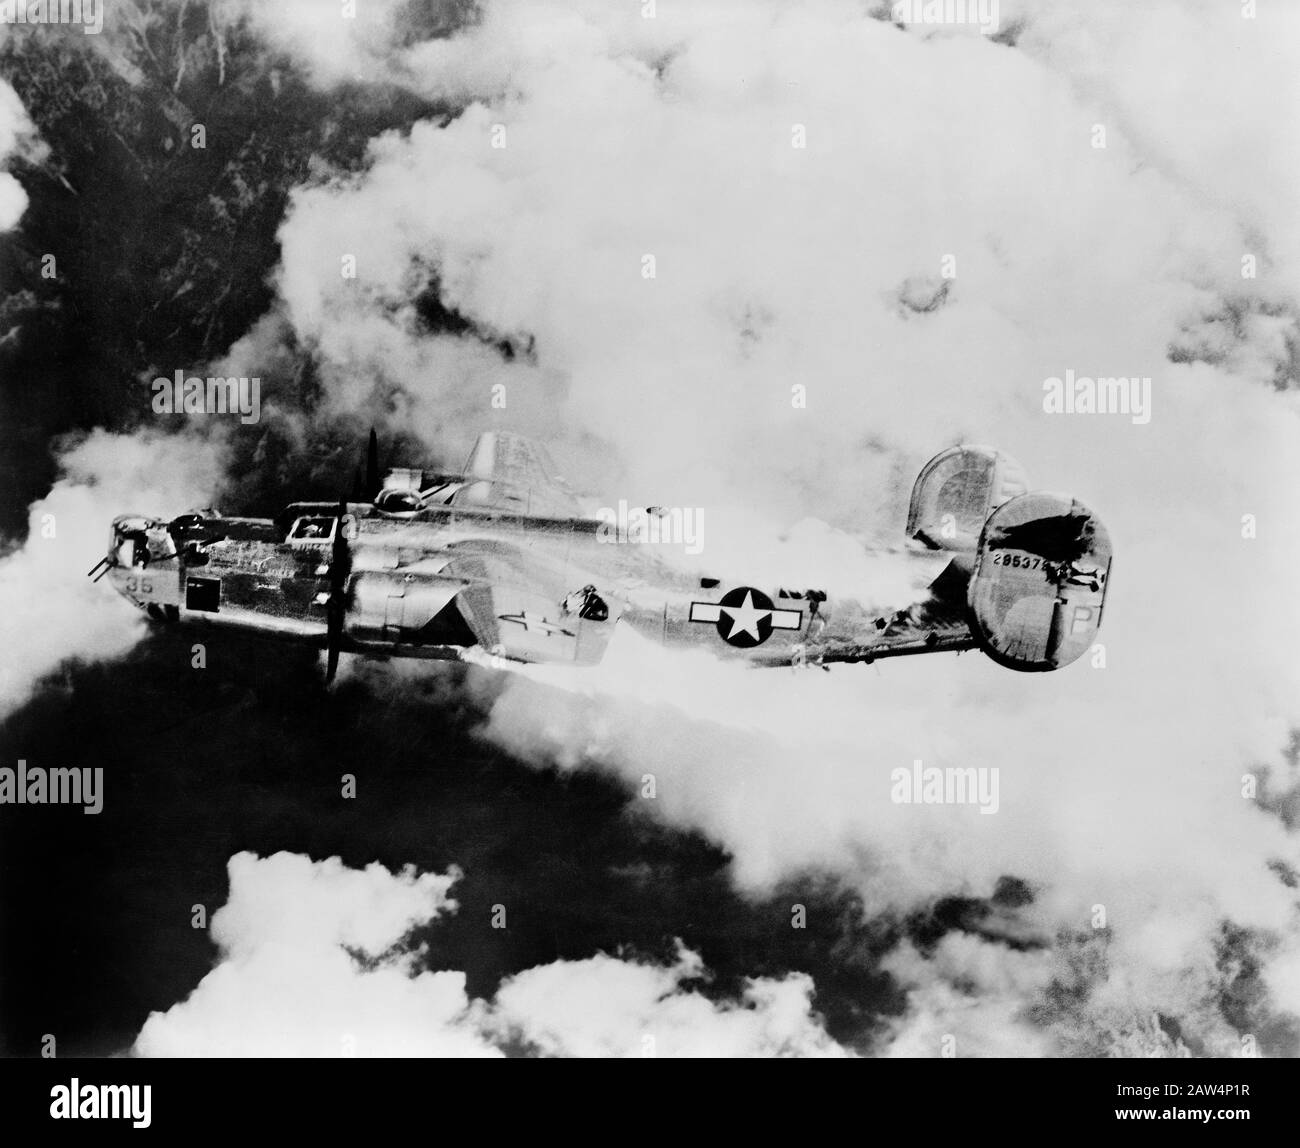 Ultimi Momenti di un Flaming B-24 Liberator dopo Raid su Austria, seconda guerra mondiale, 1942-1945 Foto Stock